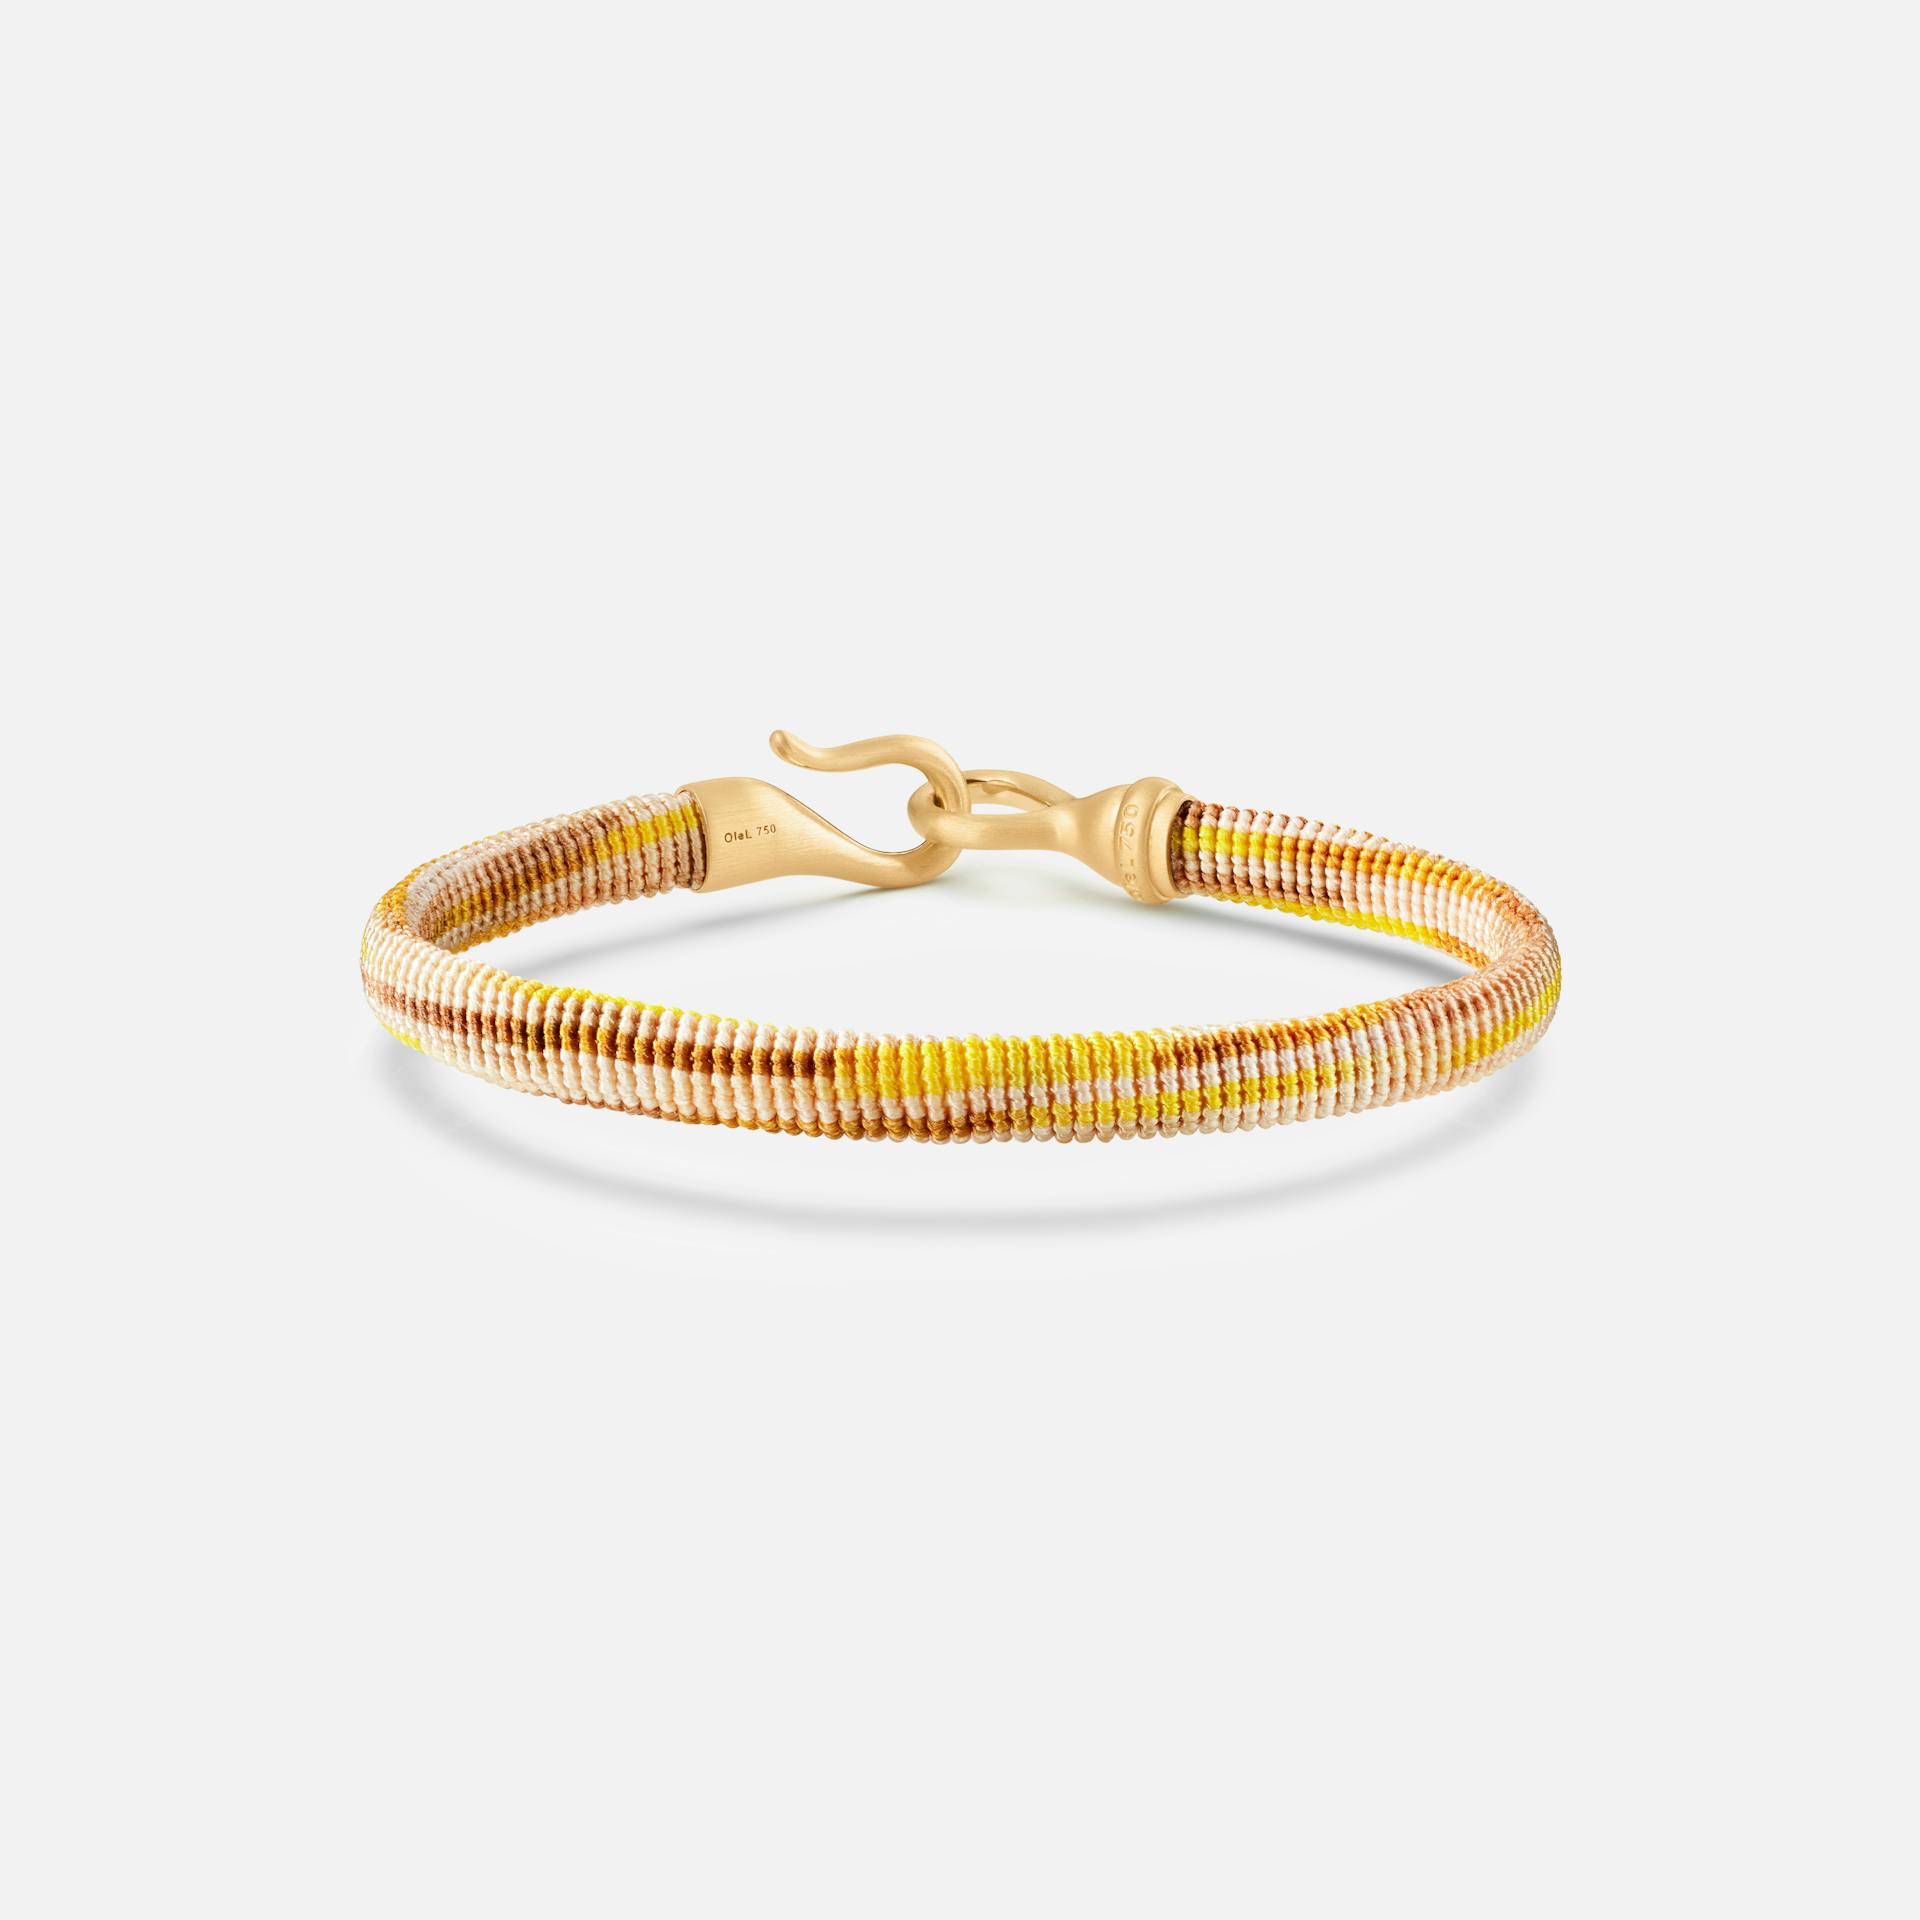 Life bracelet 6 mm 18k gold with Golden rope